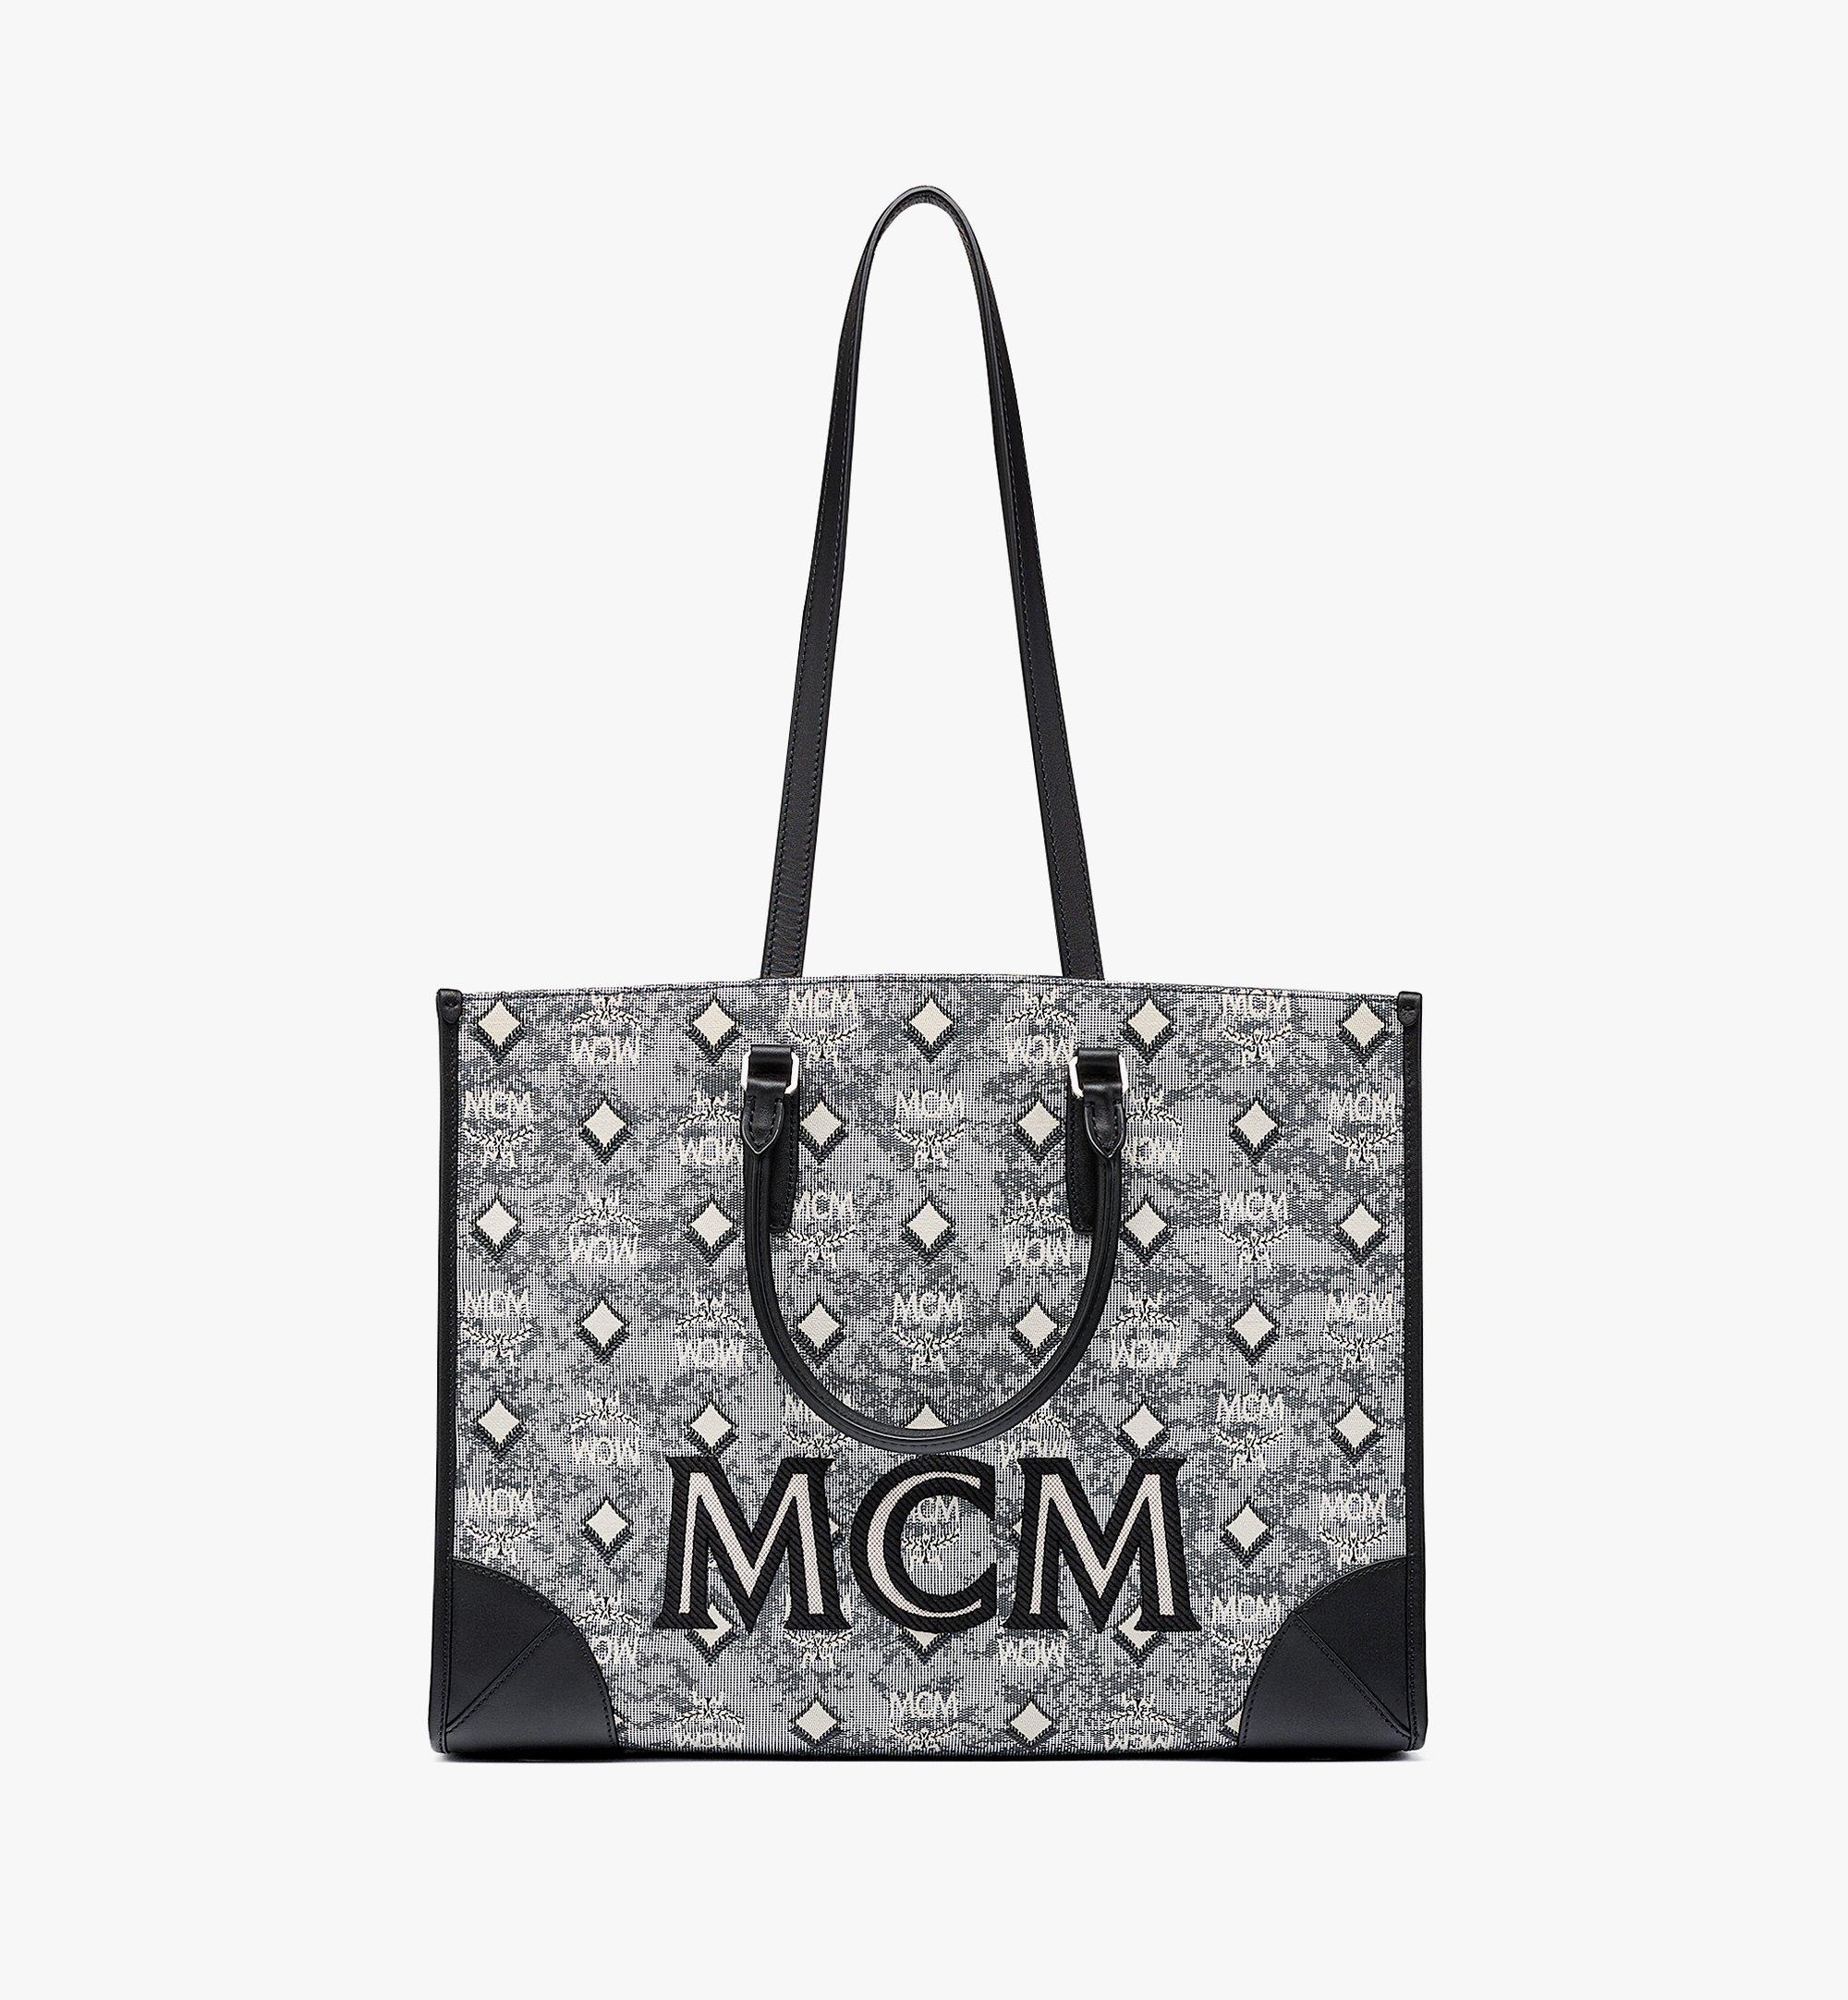 ◆ ◇ ◆ 《MCM》ヴィンテージ モノグラムジャカード トートバッグ ◆ ◇◆